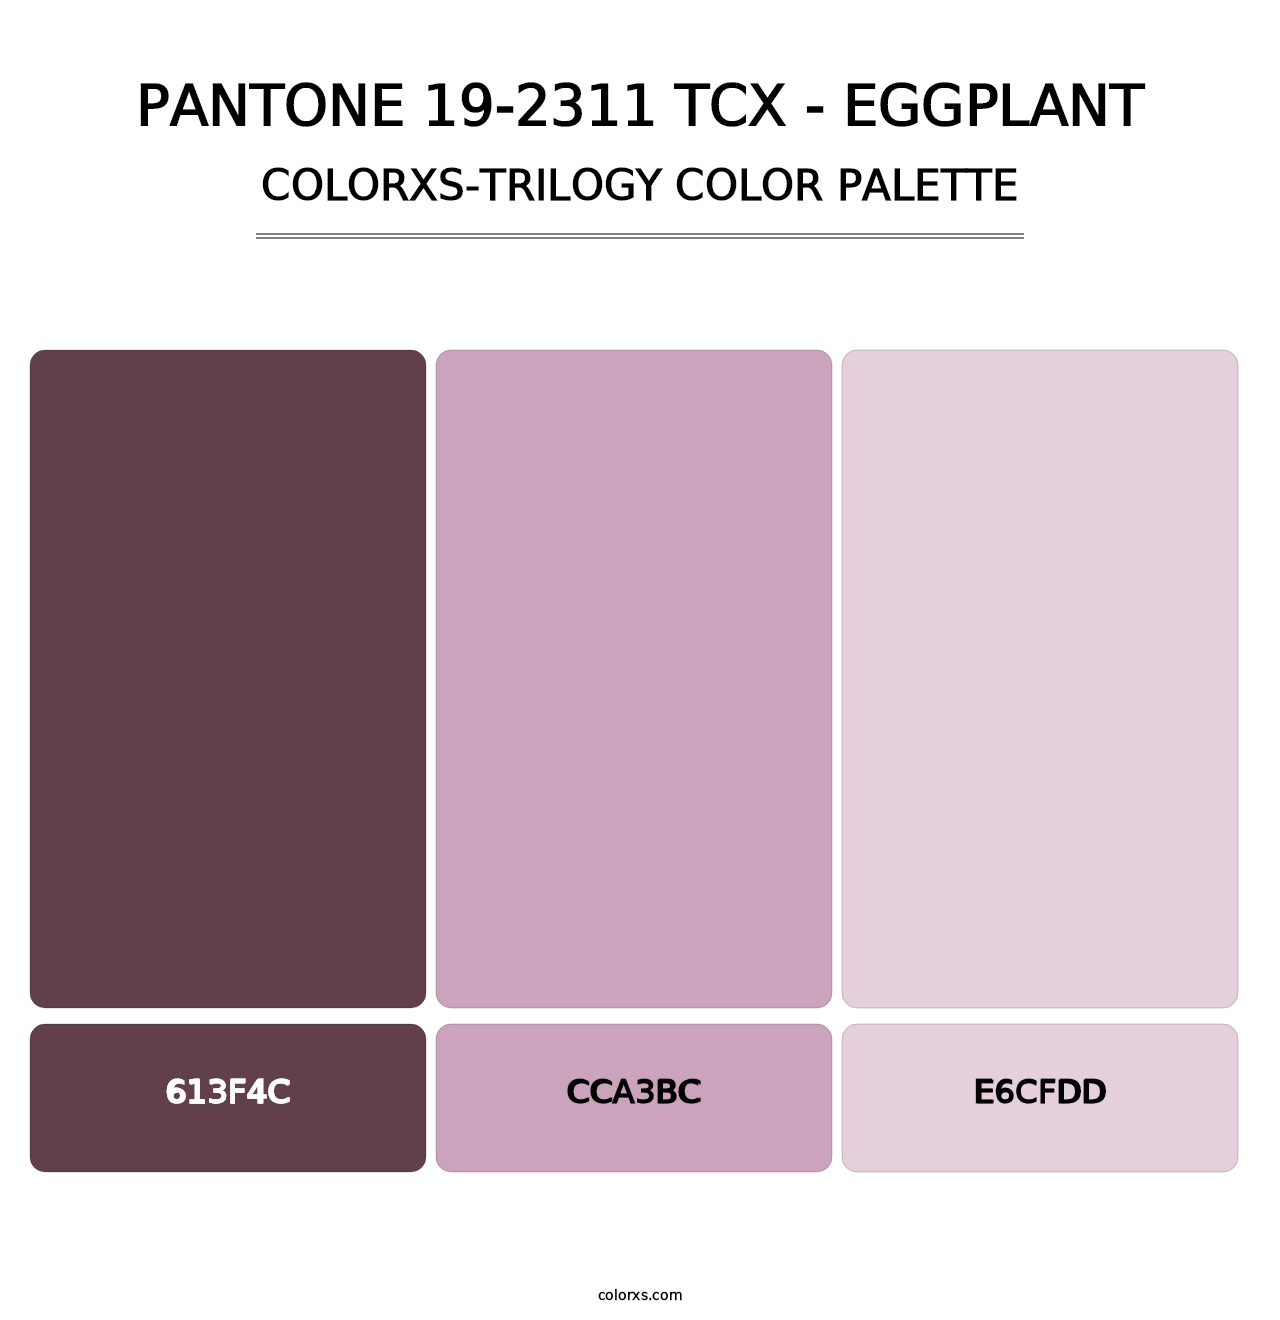 PANTONE 19-2311 TCX - Eggplant - Colorxs Trilogy Palette